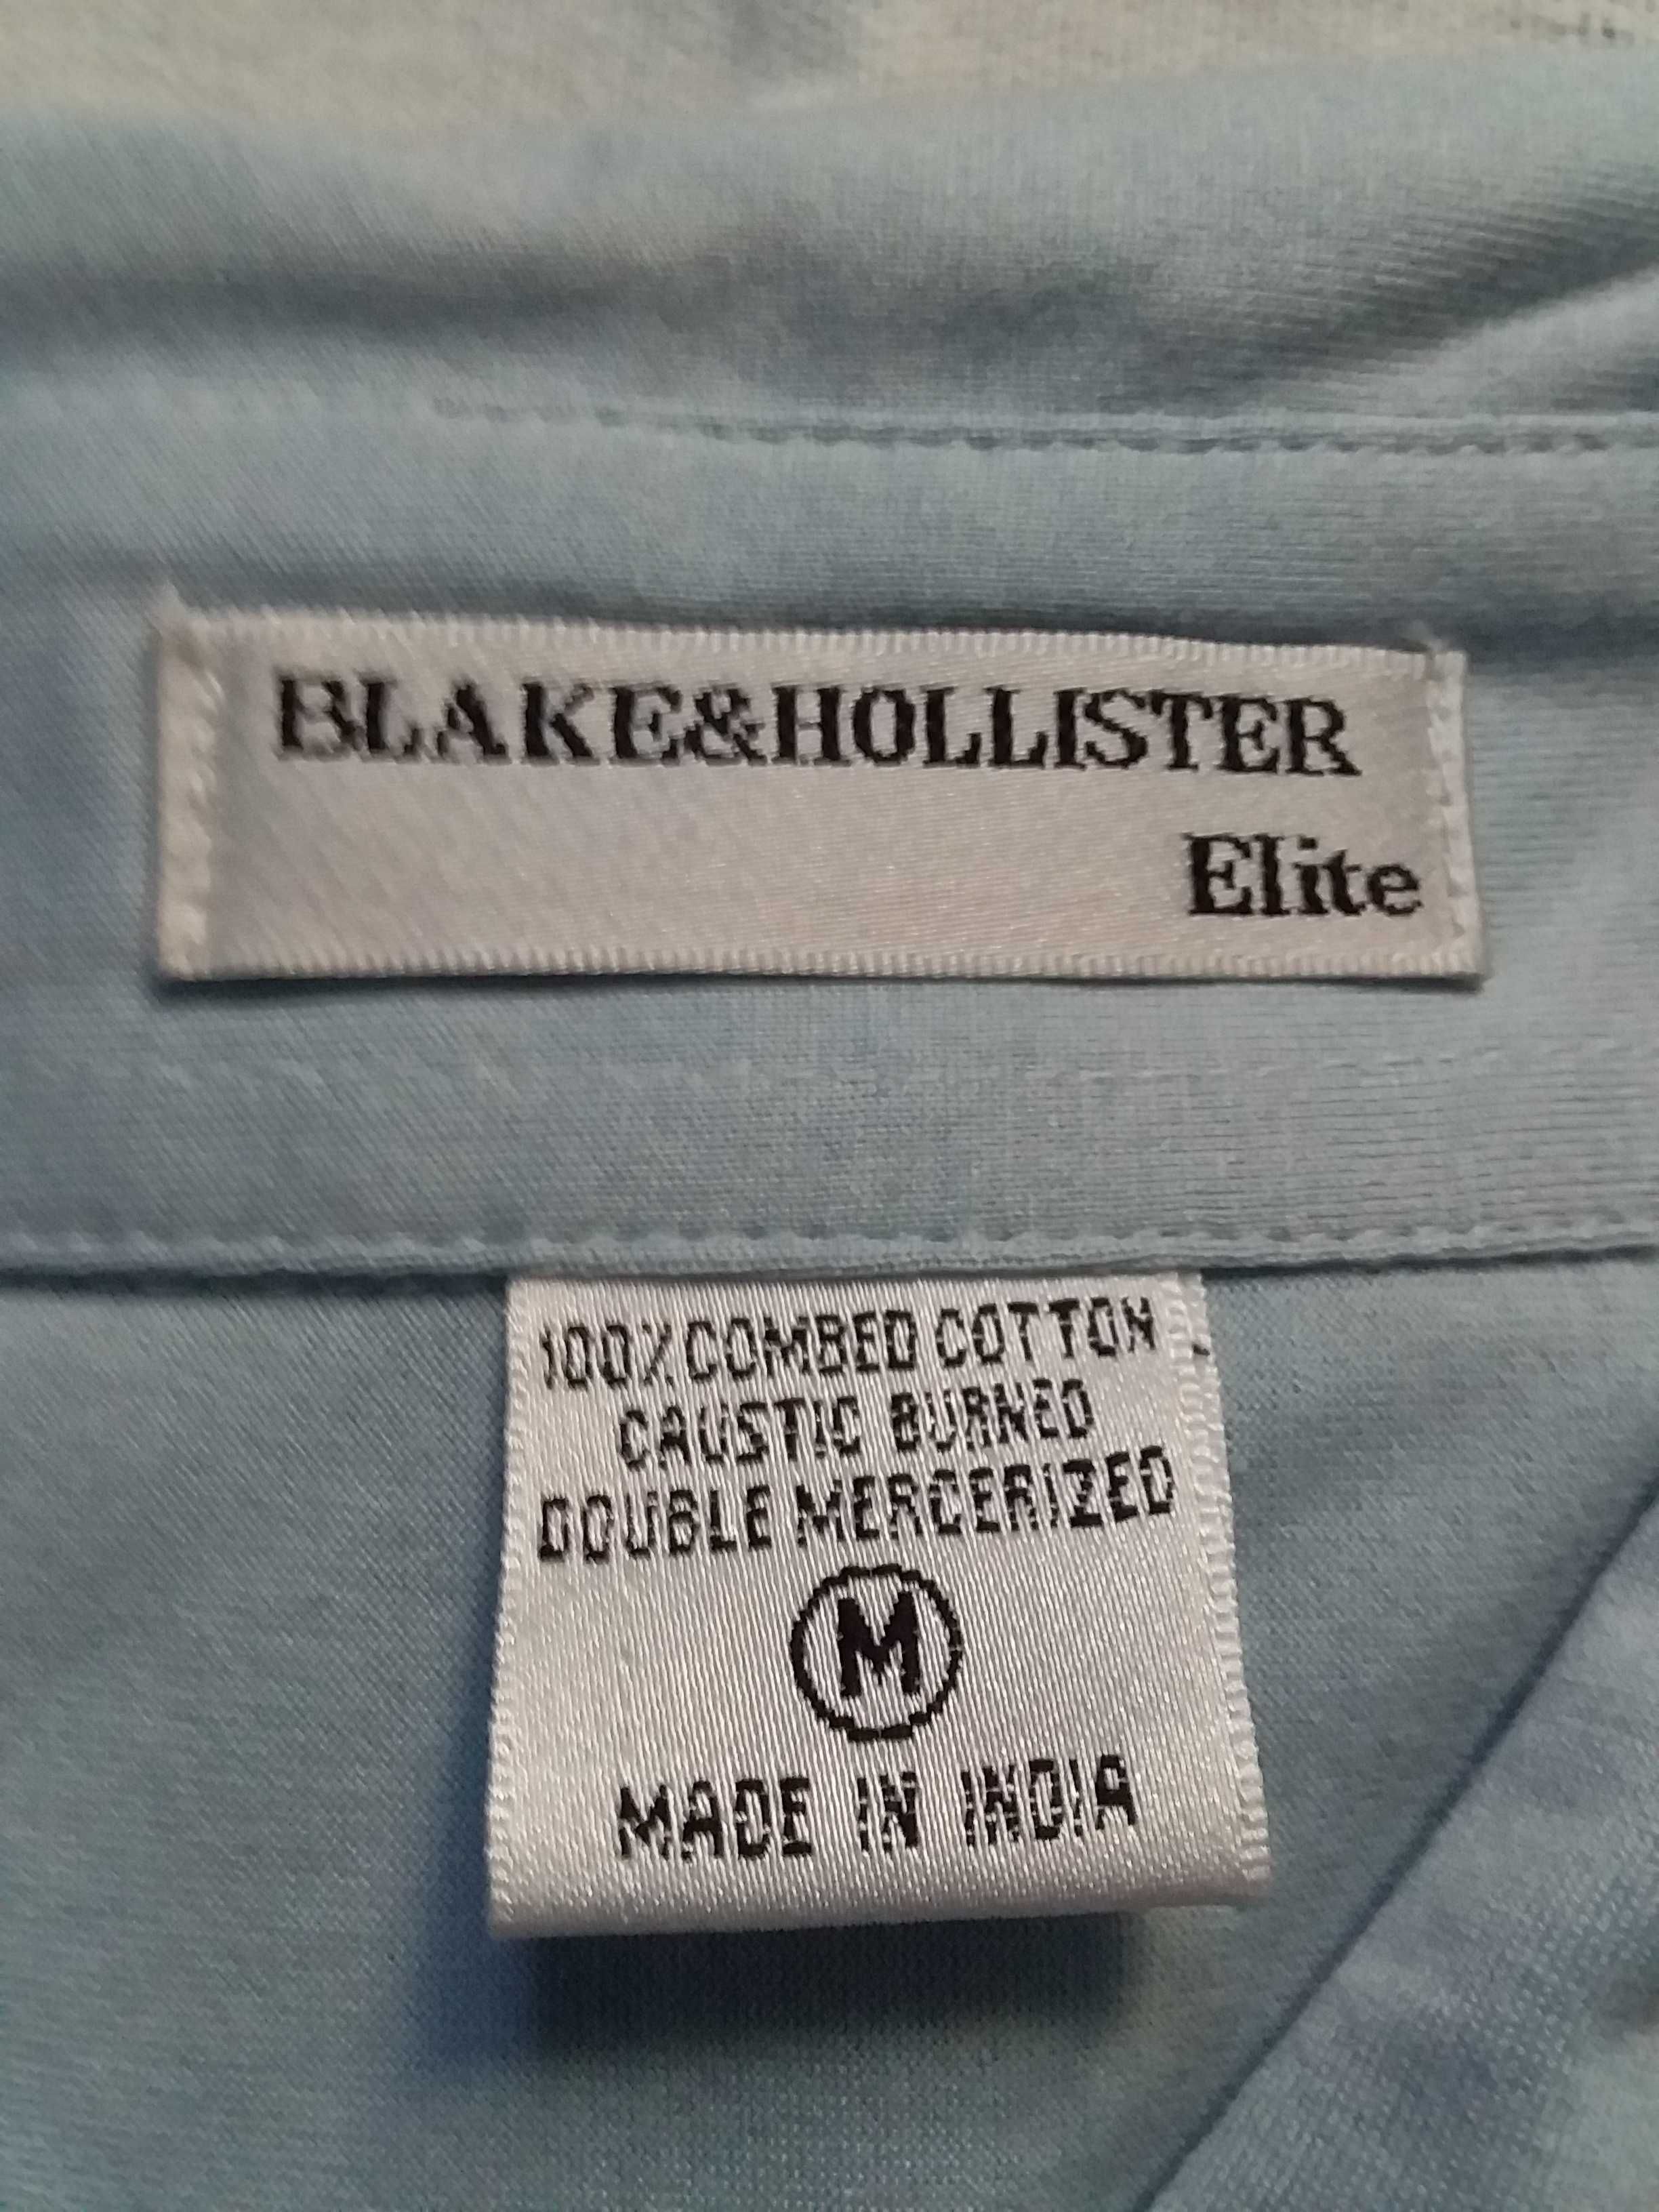 Мужская рубашка BLAKE&HOLLISTER Elite р.М (50-52) новая кор.рук Индия